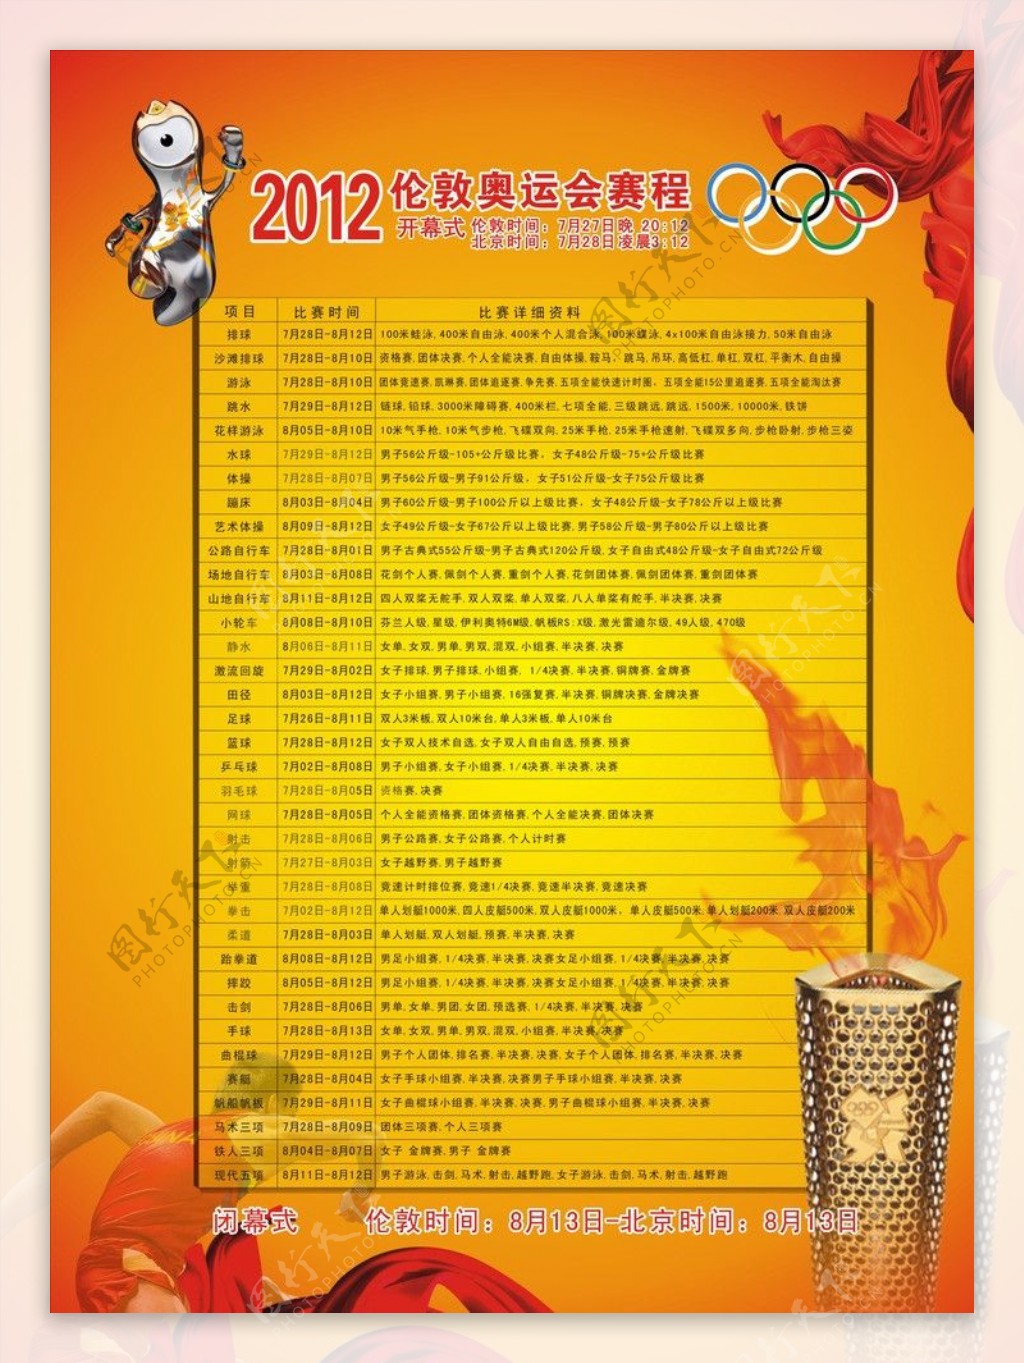 2012奥运会赛程表图片